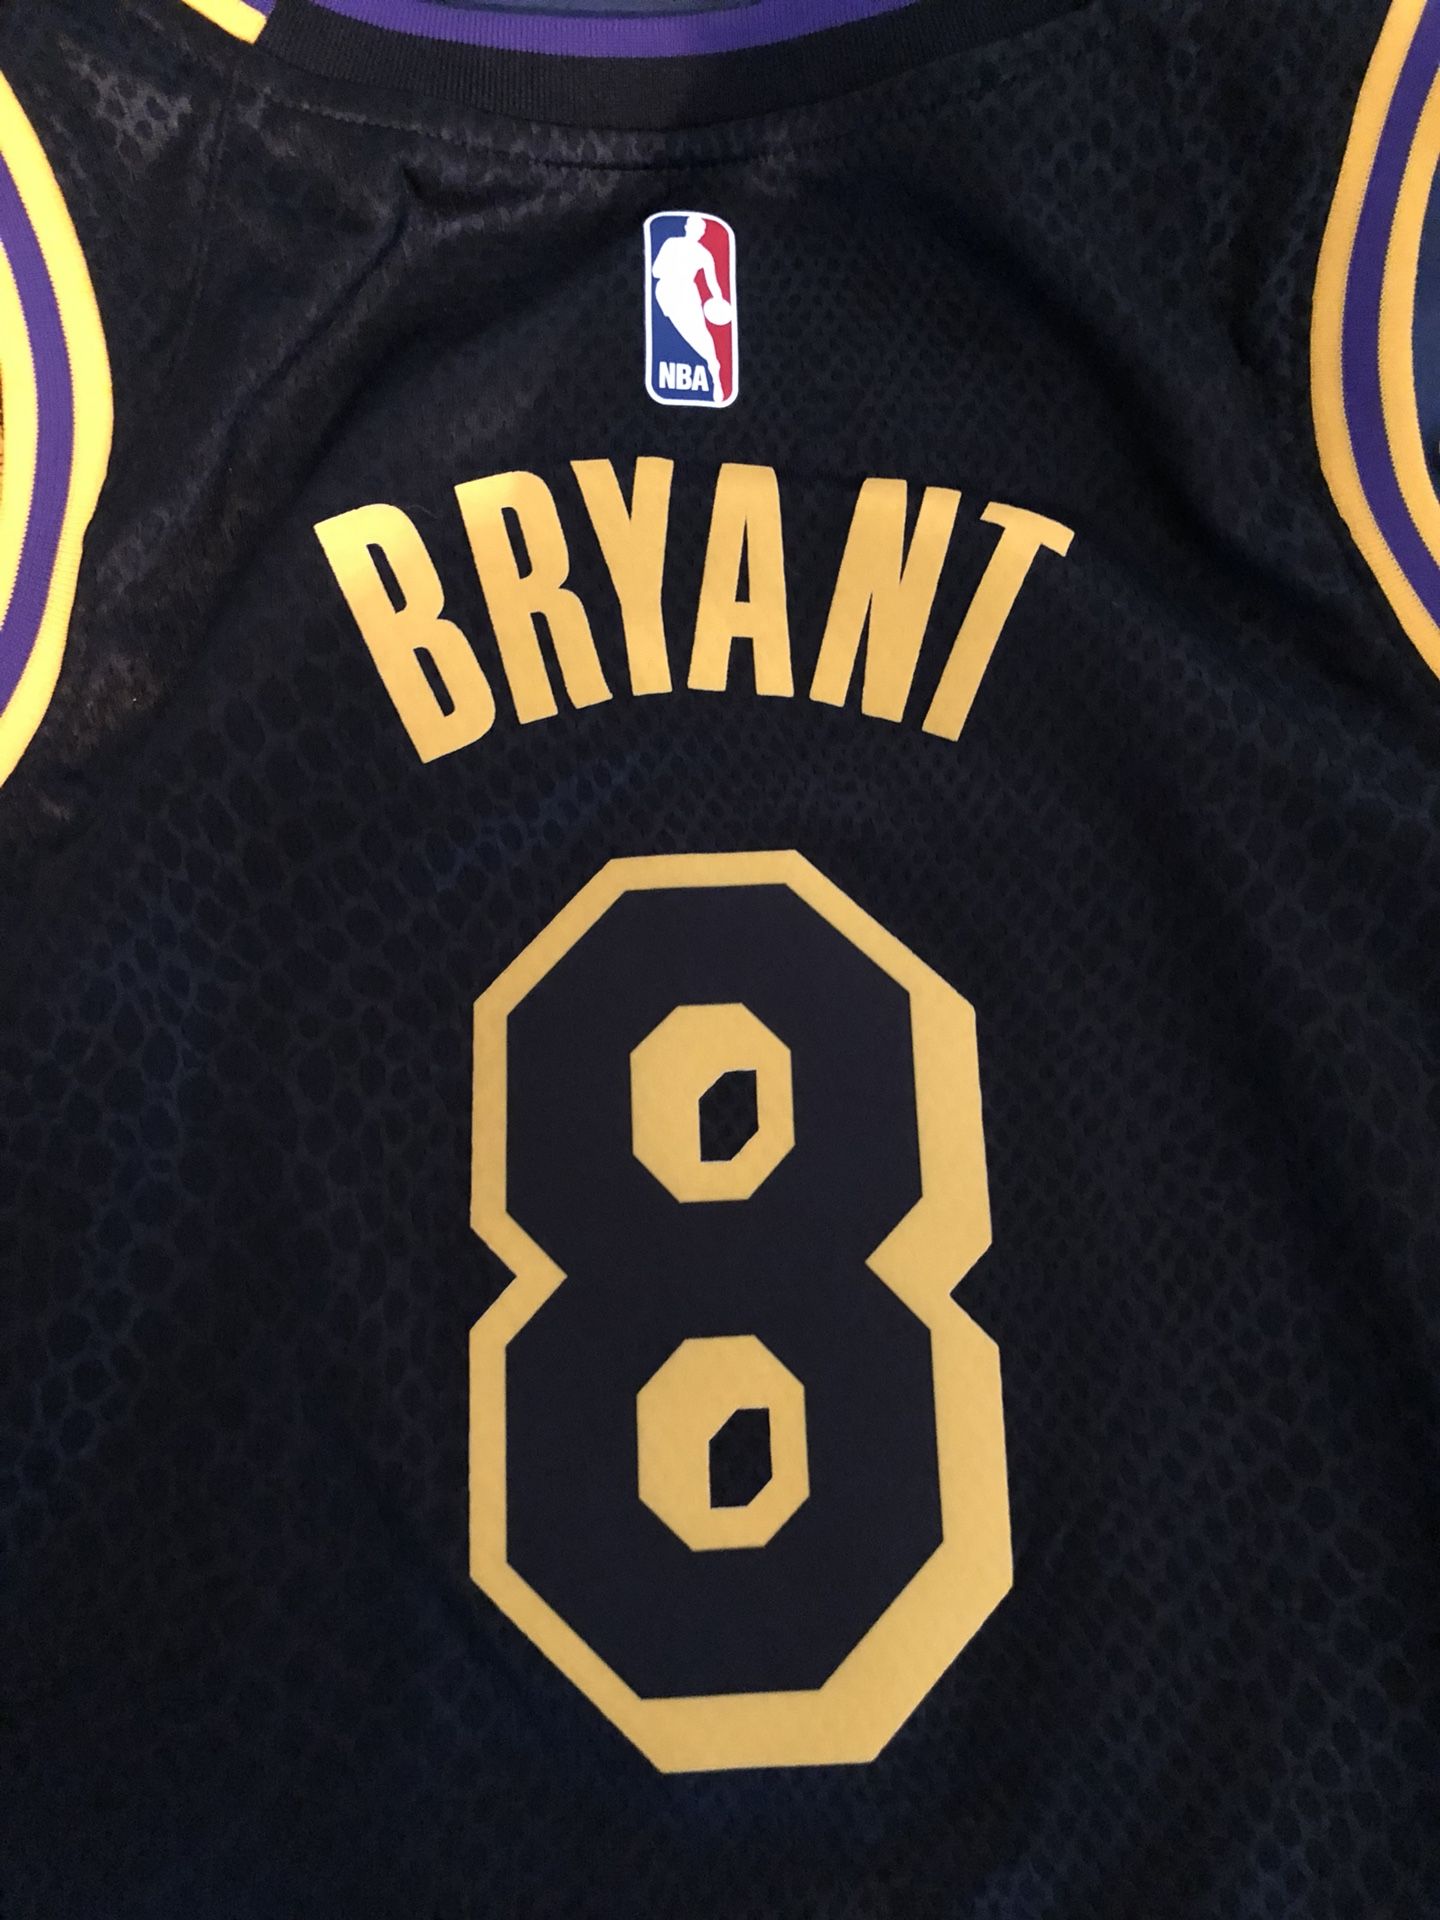 Lakers city edition lore series swingman jersey size small Kobe